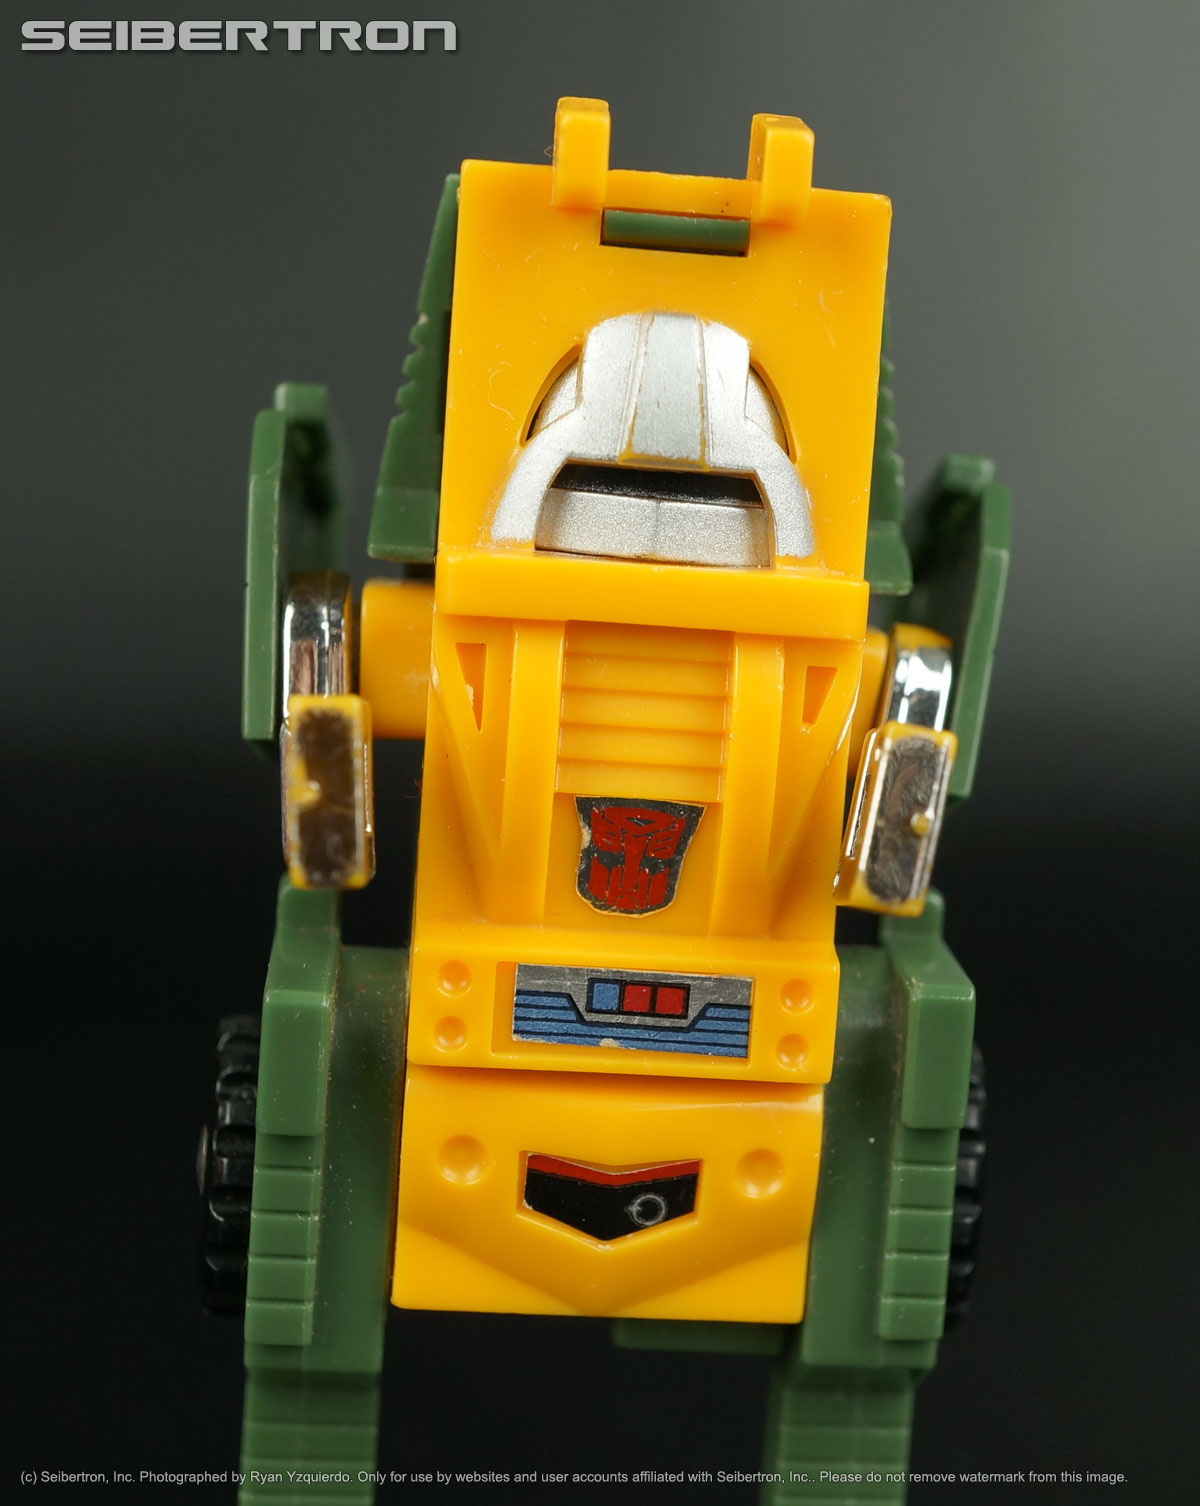 Transformers listings from Seibertron.com: BRAWN Transformers G1 Mini-bot Generation 1 Hasbro 1984 vintage Pre-rub